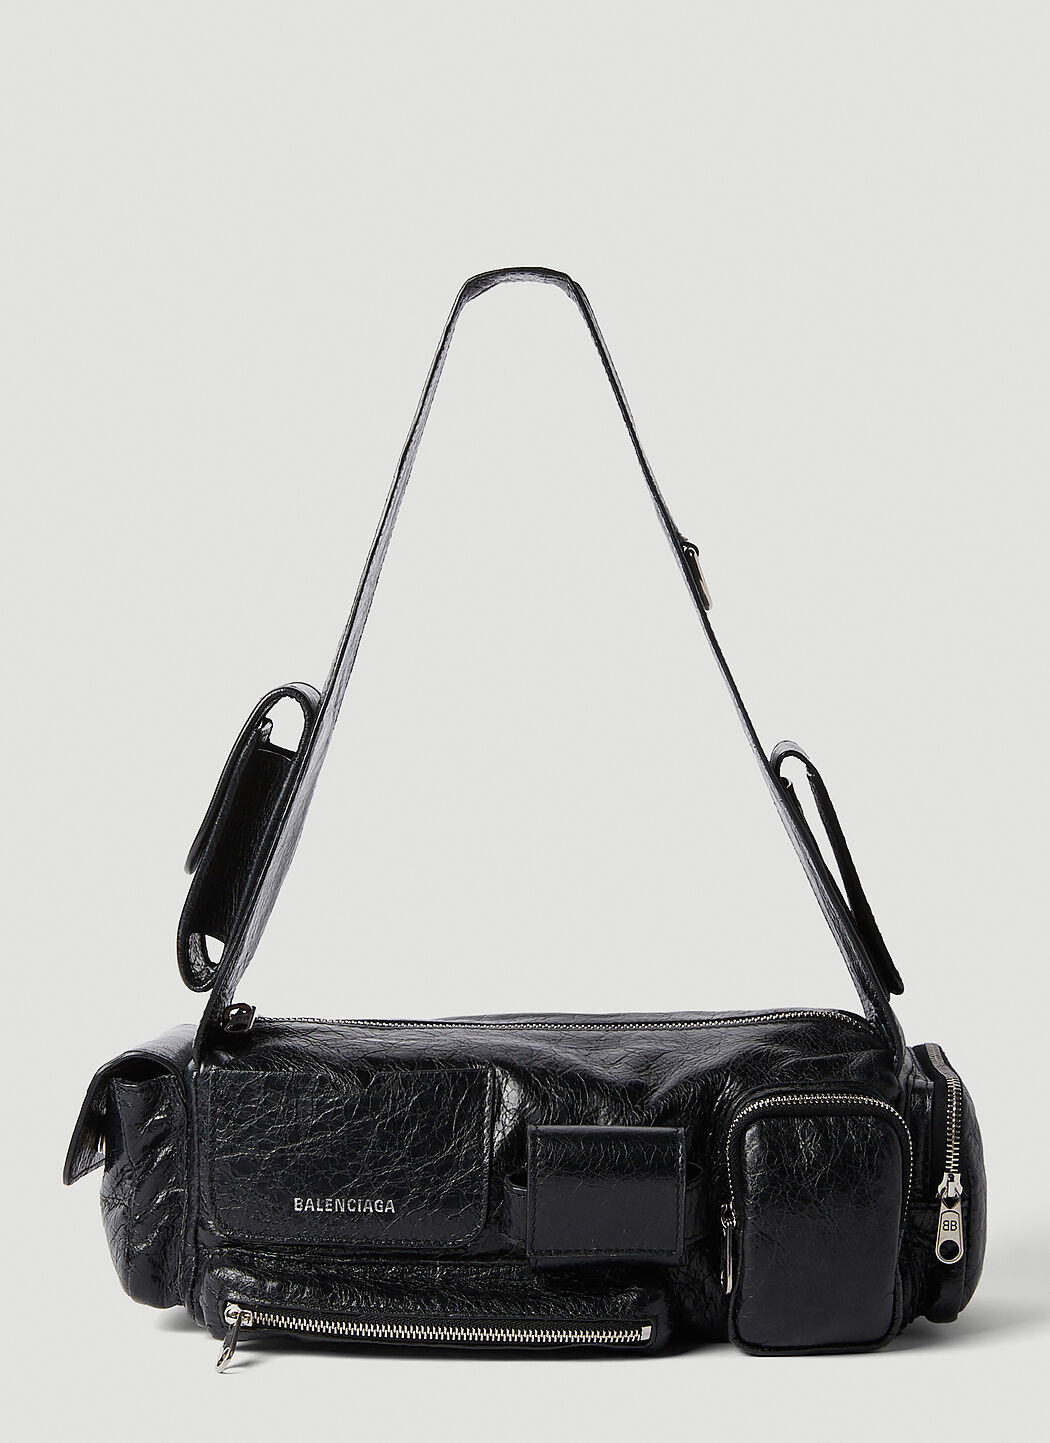 Celebrities and Balenciaga Bags A Retrospective  PurseBlog  Celebrity  handbags Balenciaga bag Balenciaga